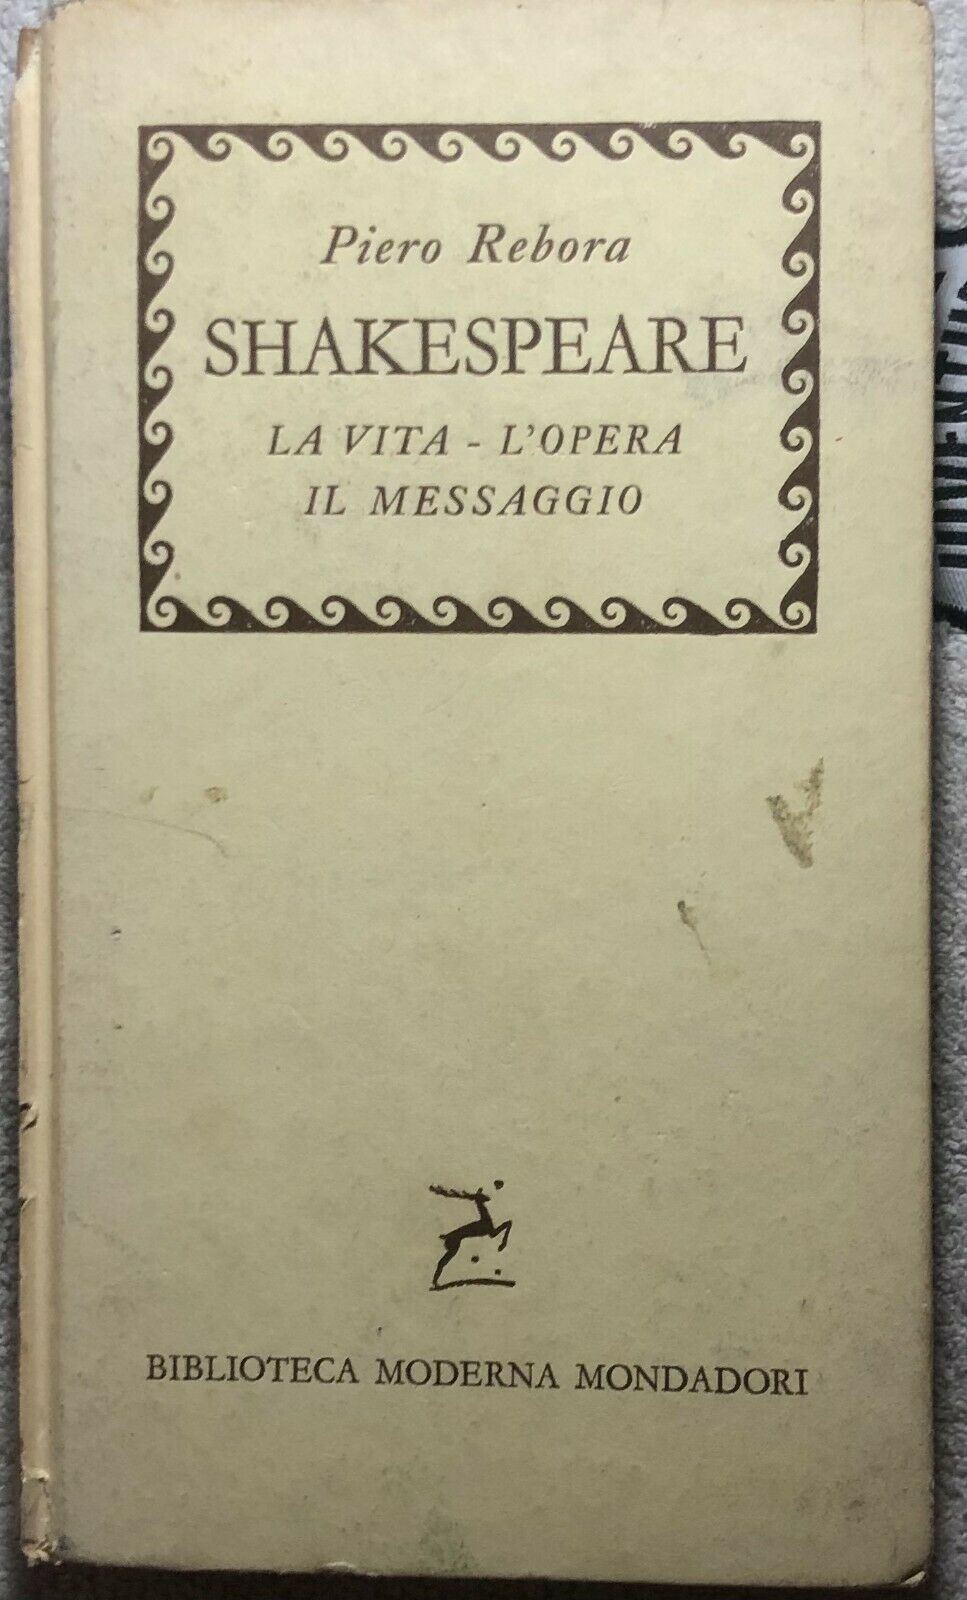 Shakespeare La vita - L'opera - Il messaggio di Piero Rebora,  1958,  Mondadori